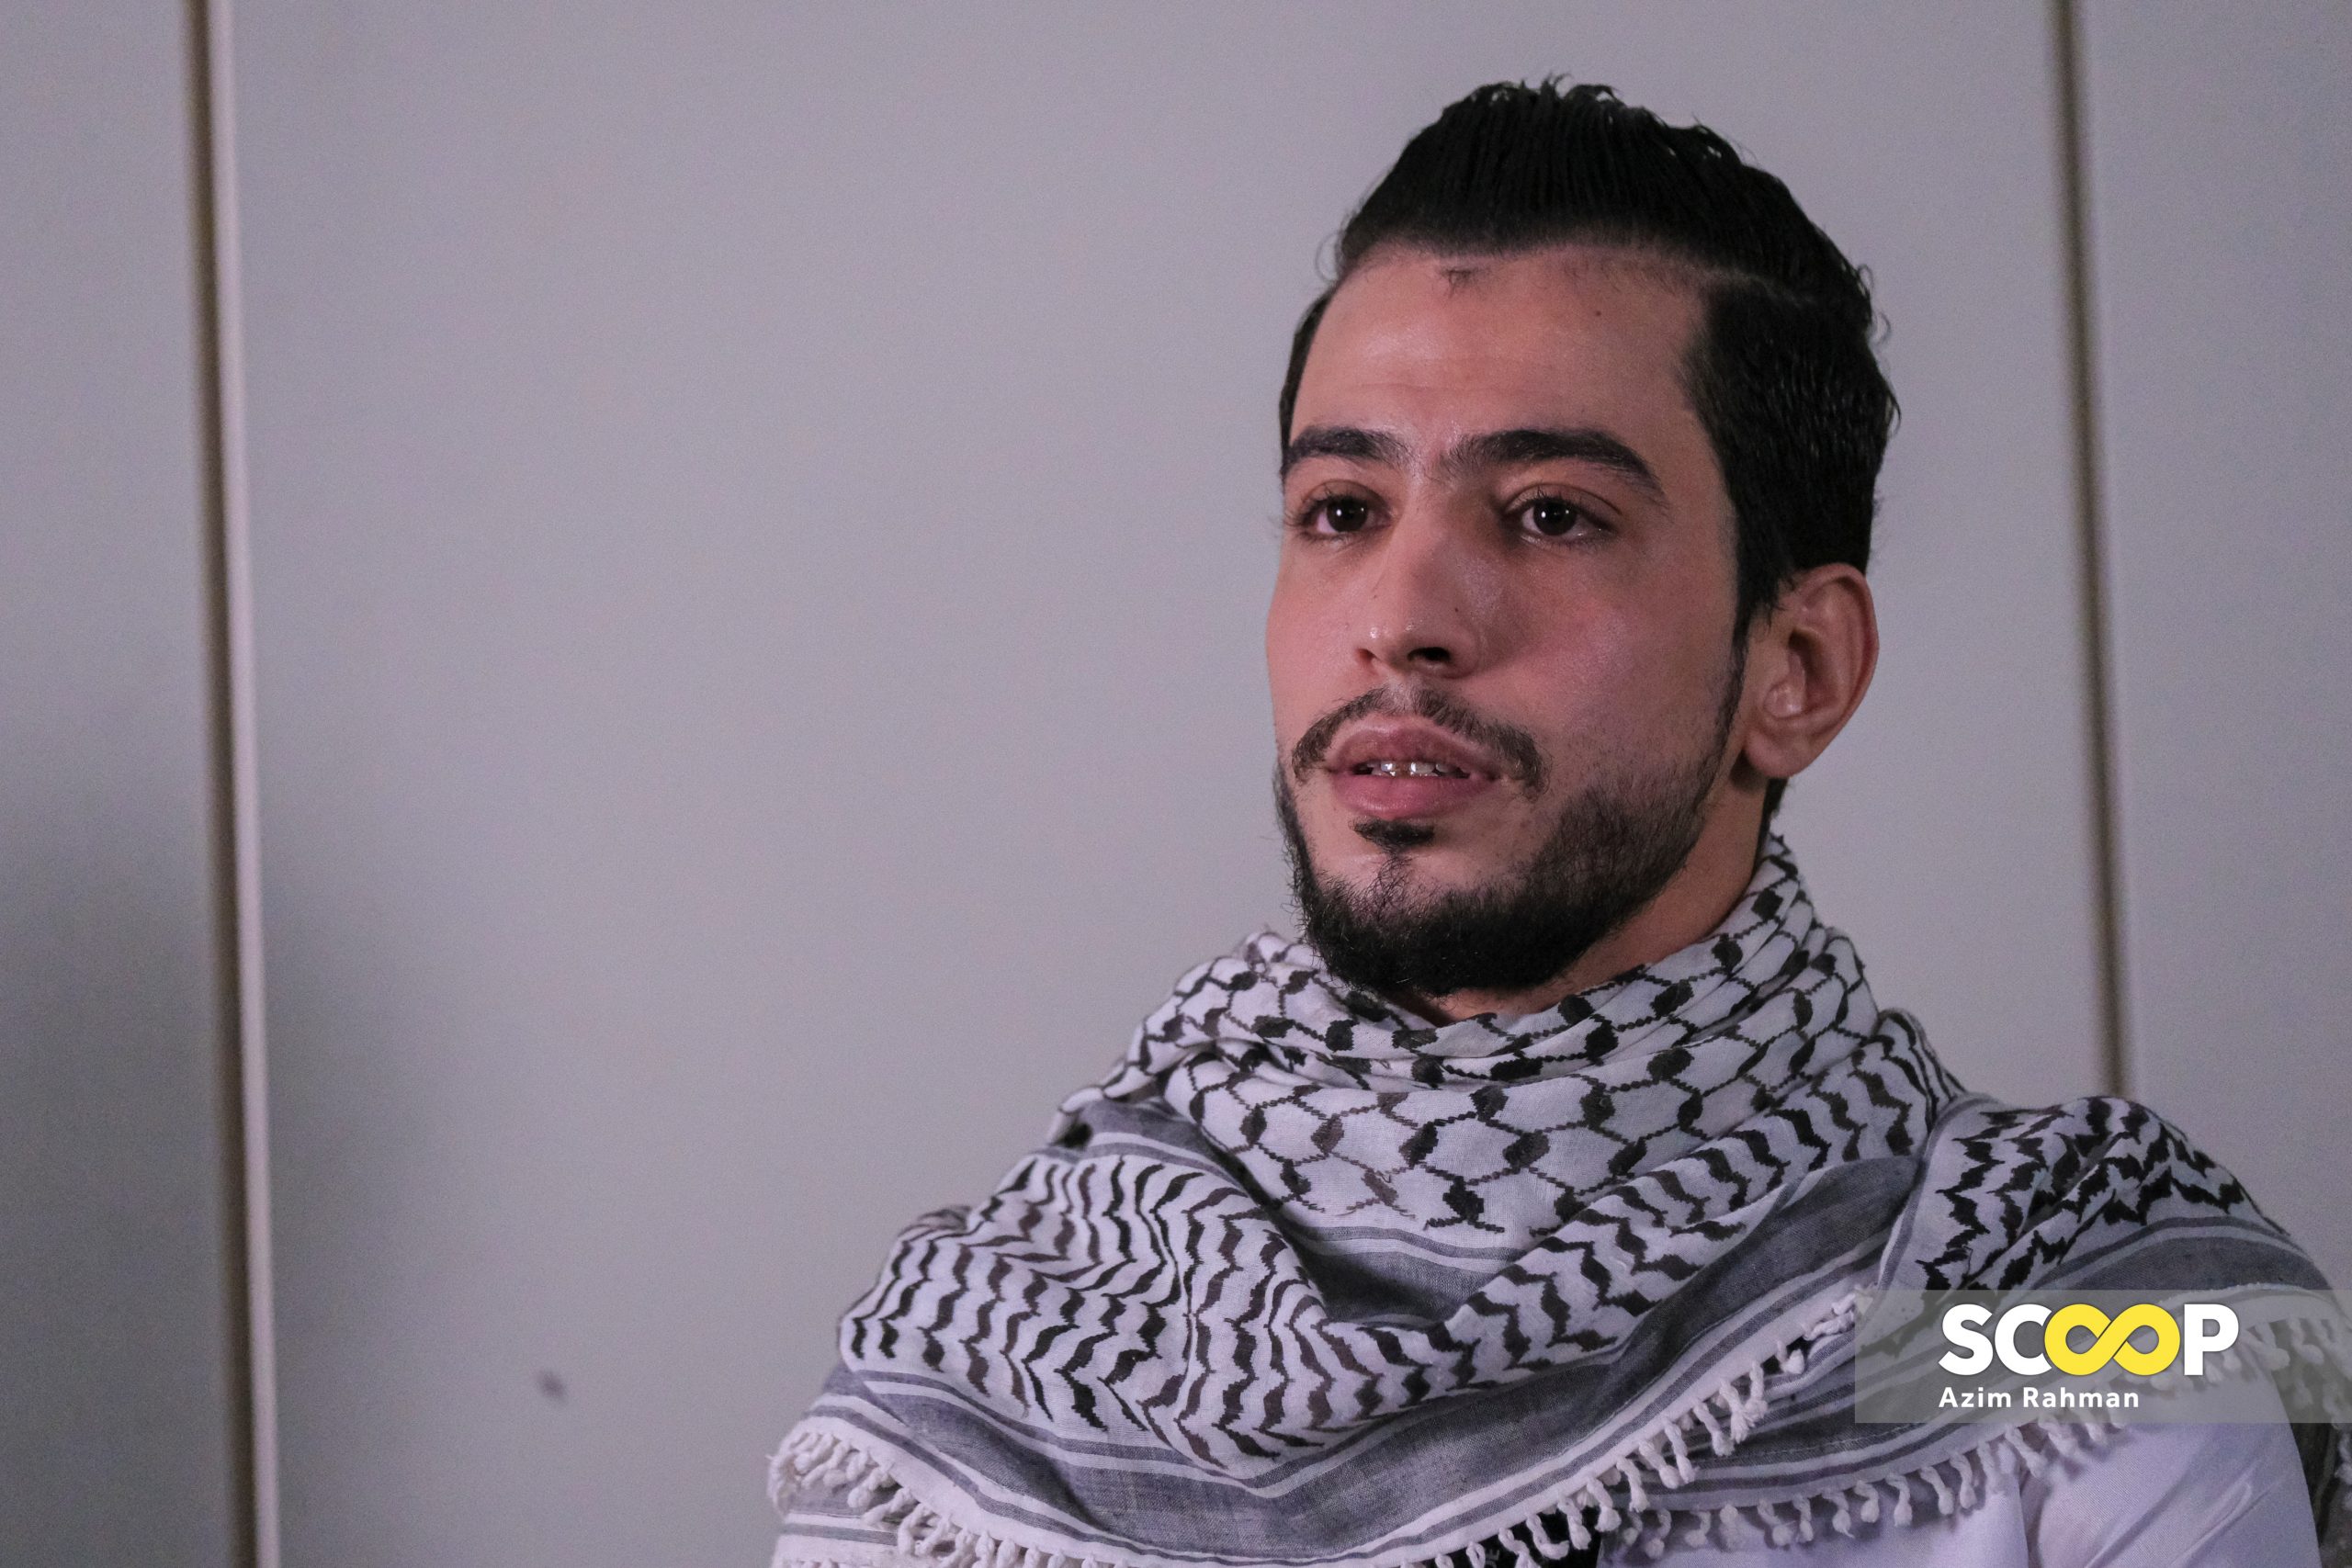 Yousef Abuassi risau fikir kesengsaraan keluarga di Gaza, adik hilang sejak 26 hari lalu